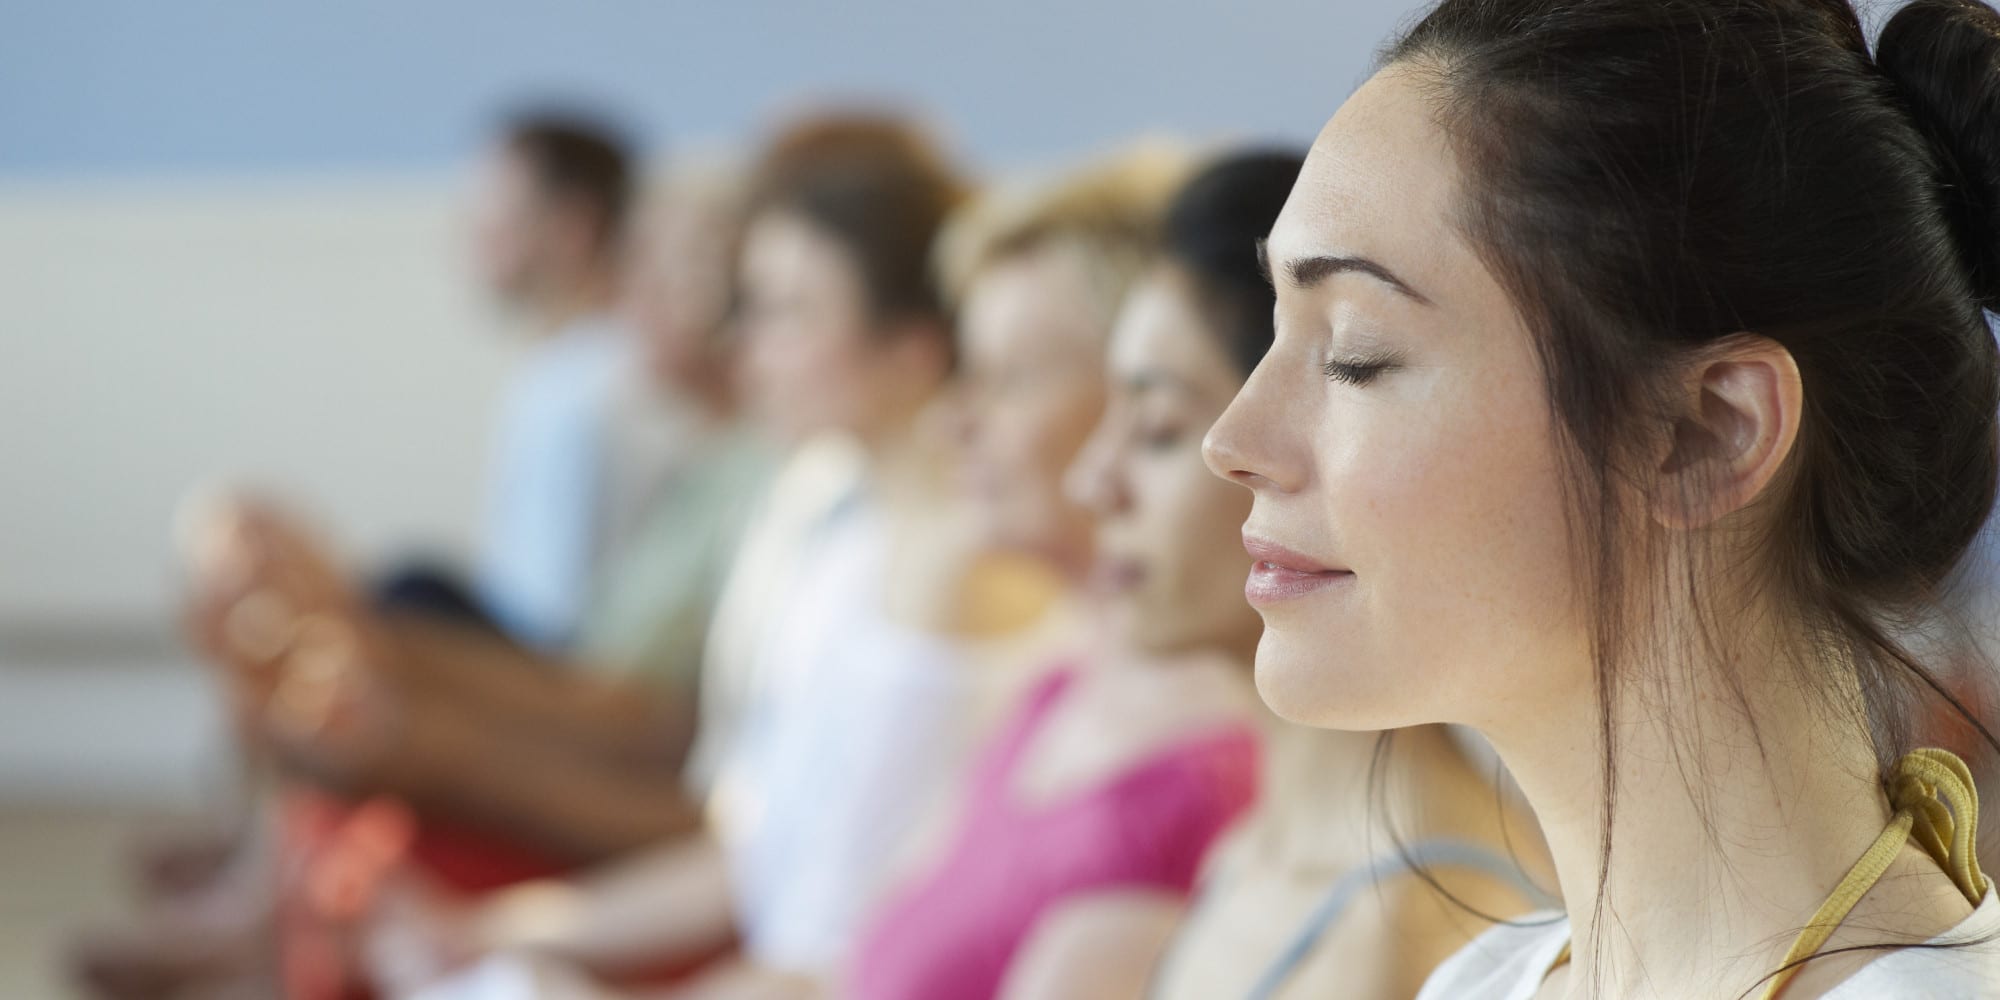 meditazione mindfulness trasformare i pensieri negativi: meditazione mindfulness